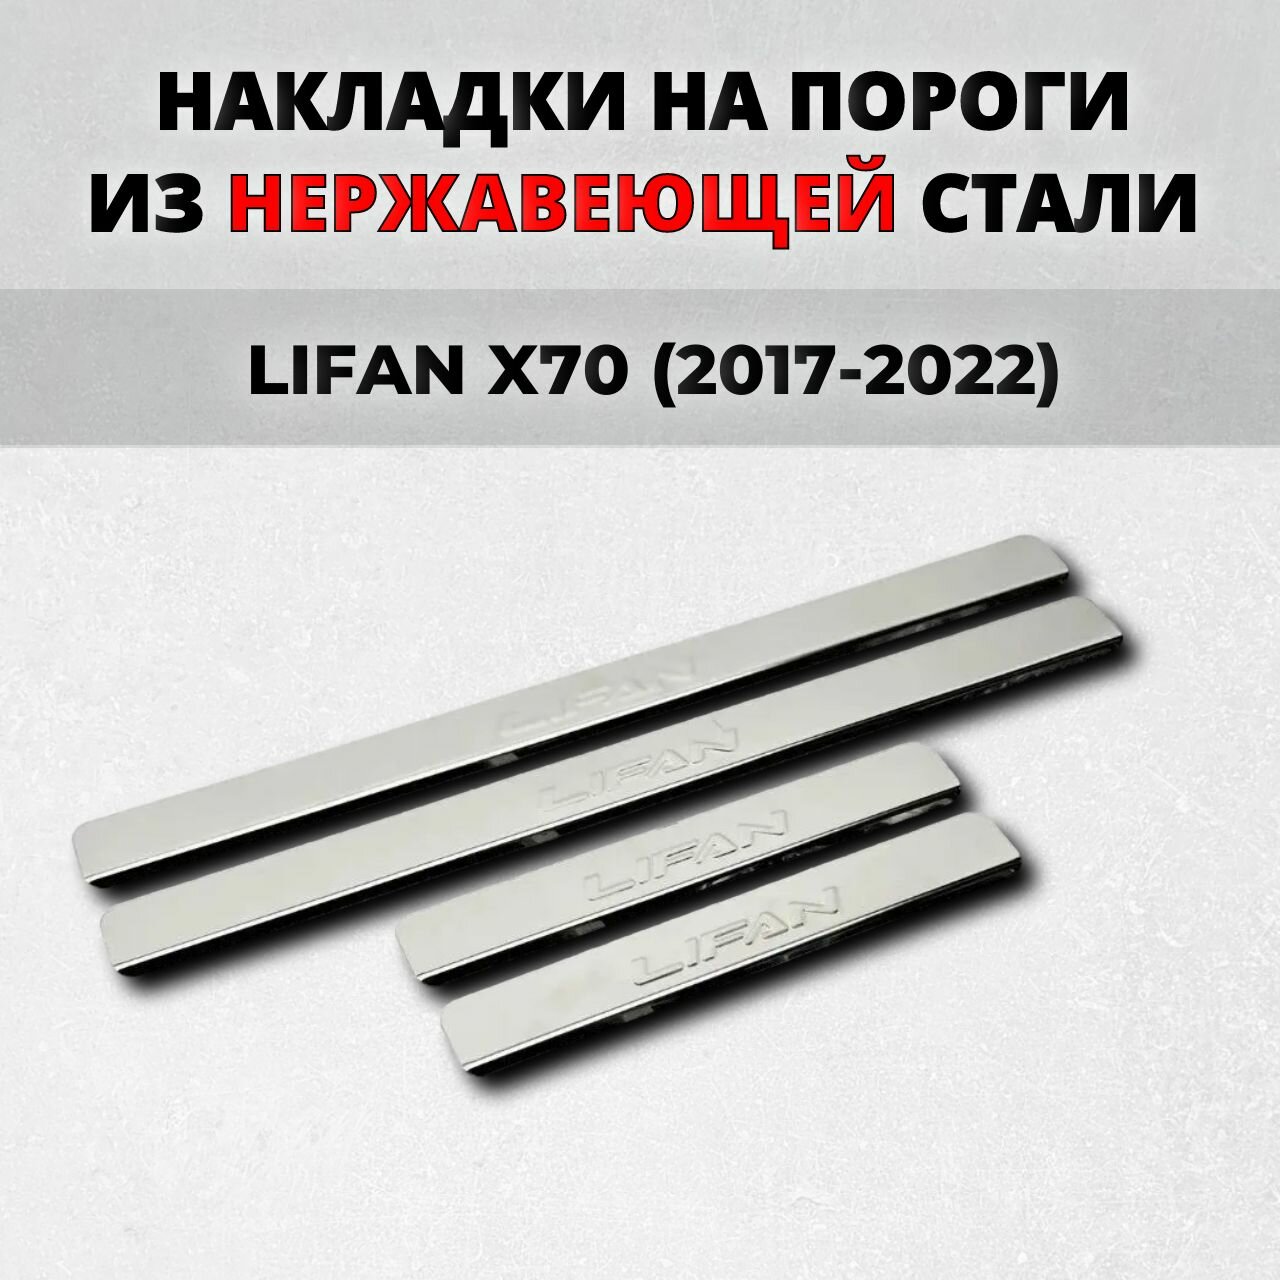 Накладки на пороги Лифан Х70 2017-2022 из нержавеющей стали LIFAN X70